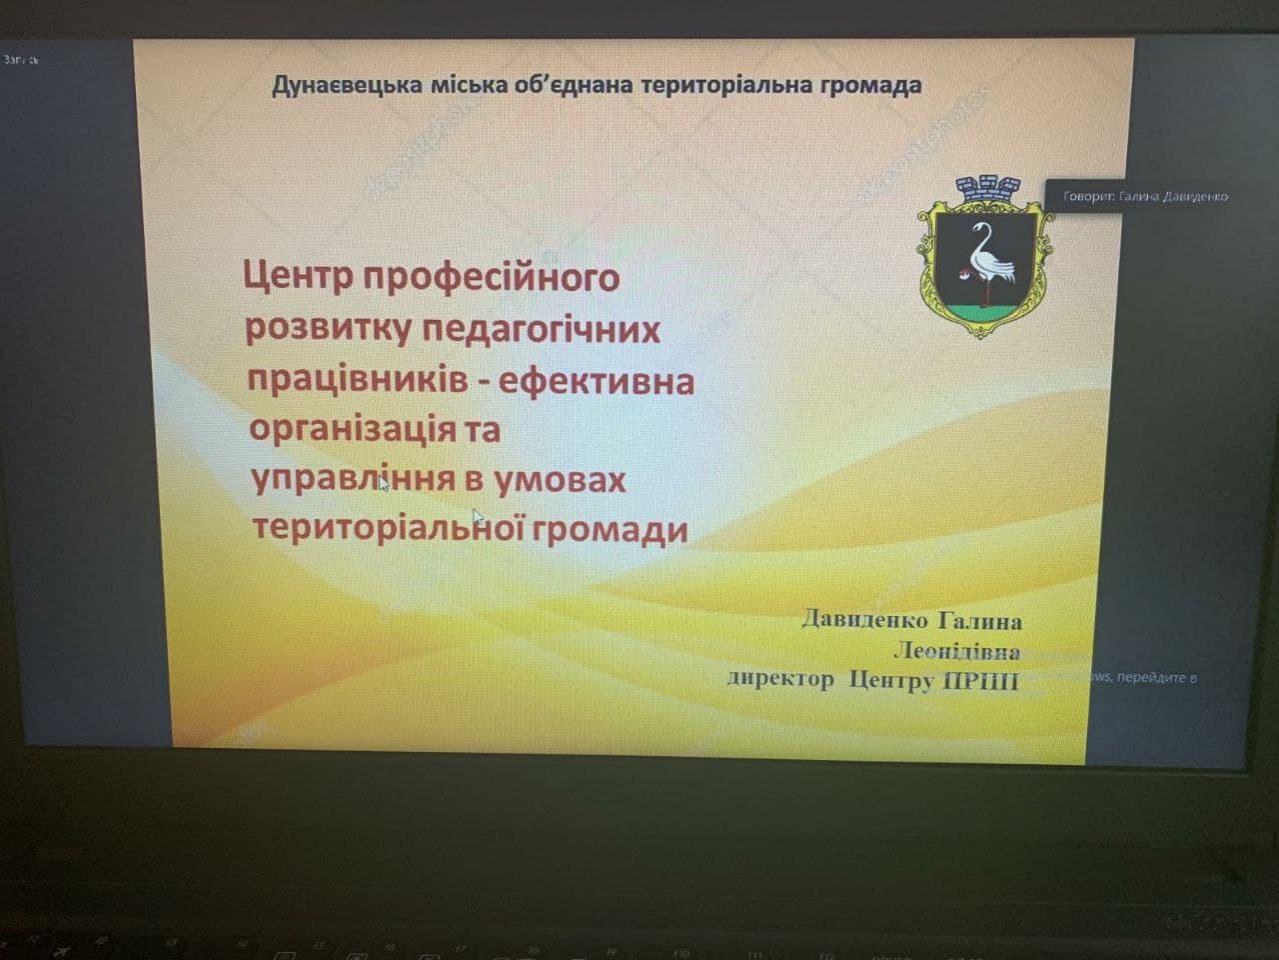 http://dunrada.gov.ua/uploadfile/archive_news/2021/03/17/2021-03-17_9022/images/images-7813.jpg